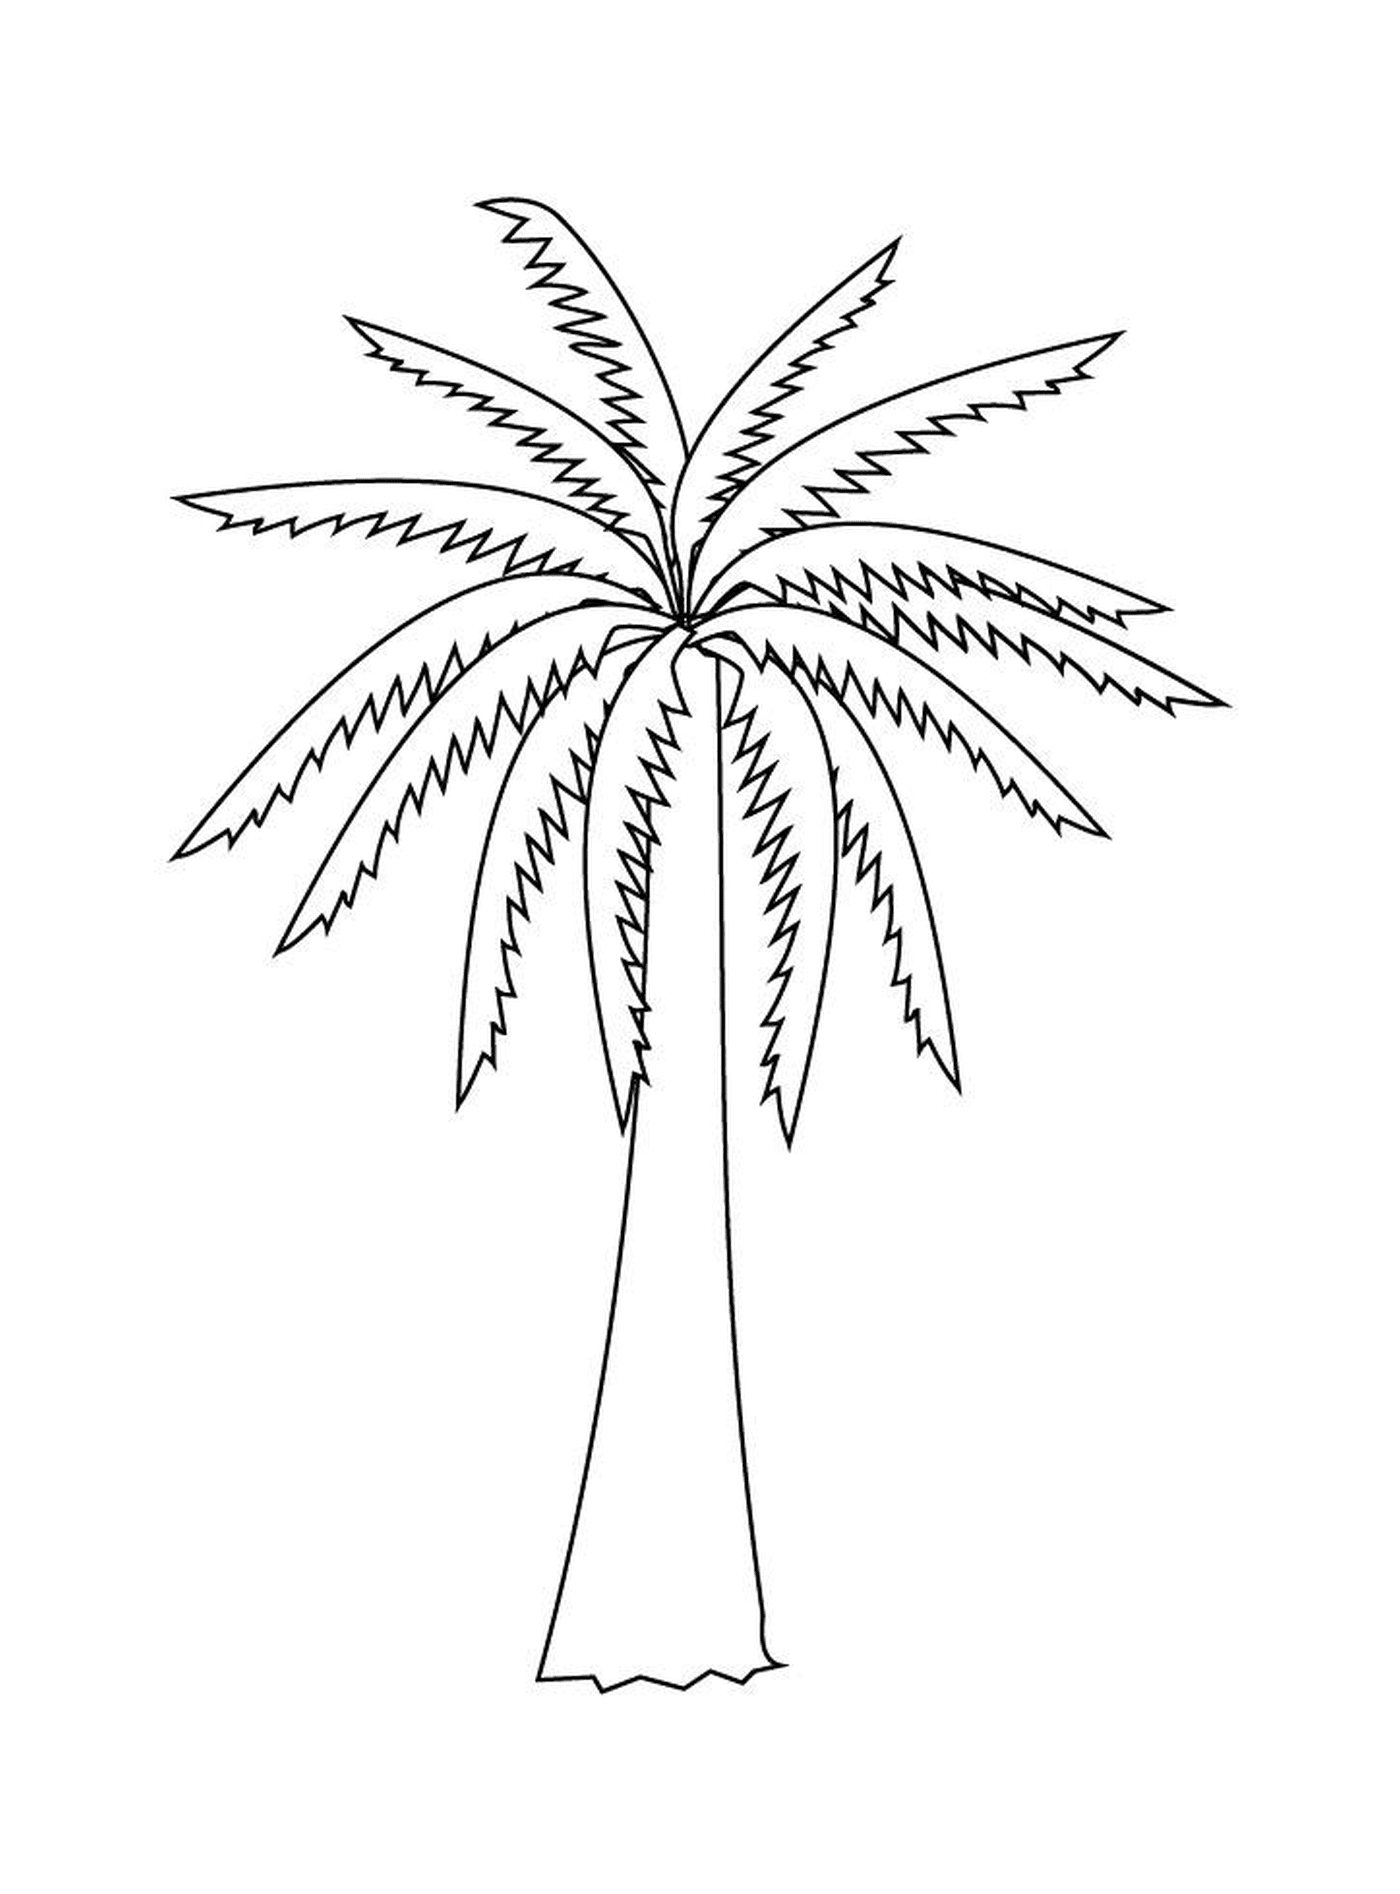  原棕榈树 